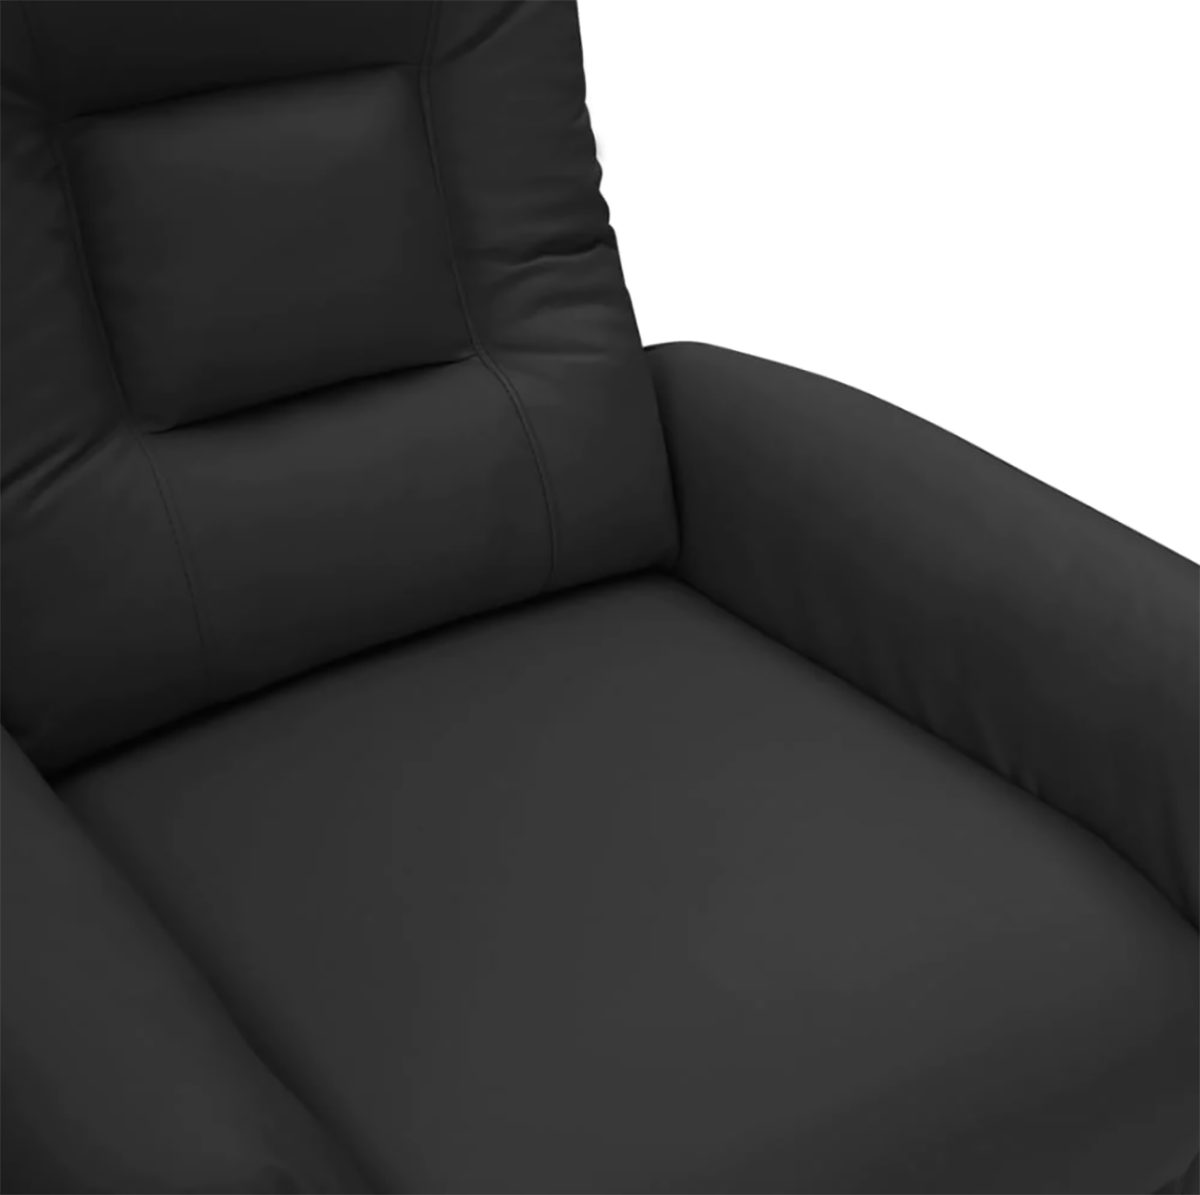 DOTMALL Stuhl Elektrischer Massagesessel Kunstleder schwarzem aus